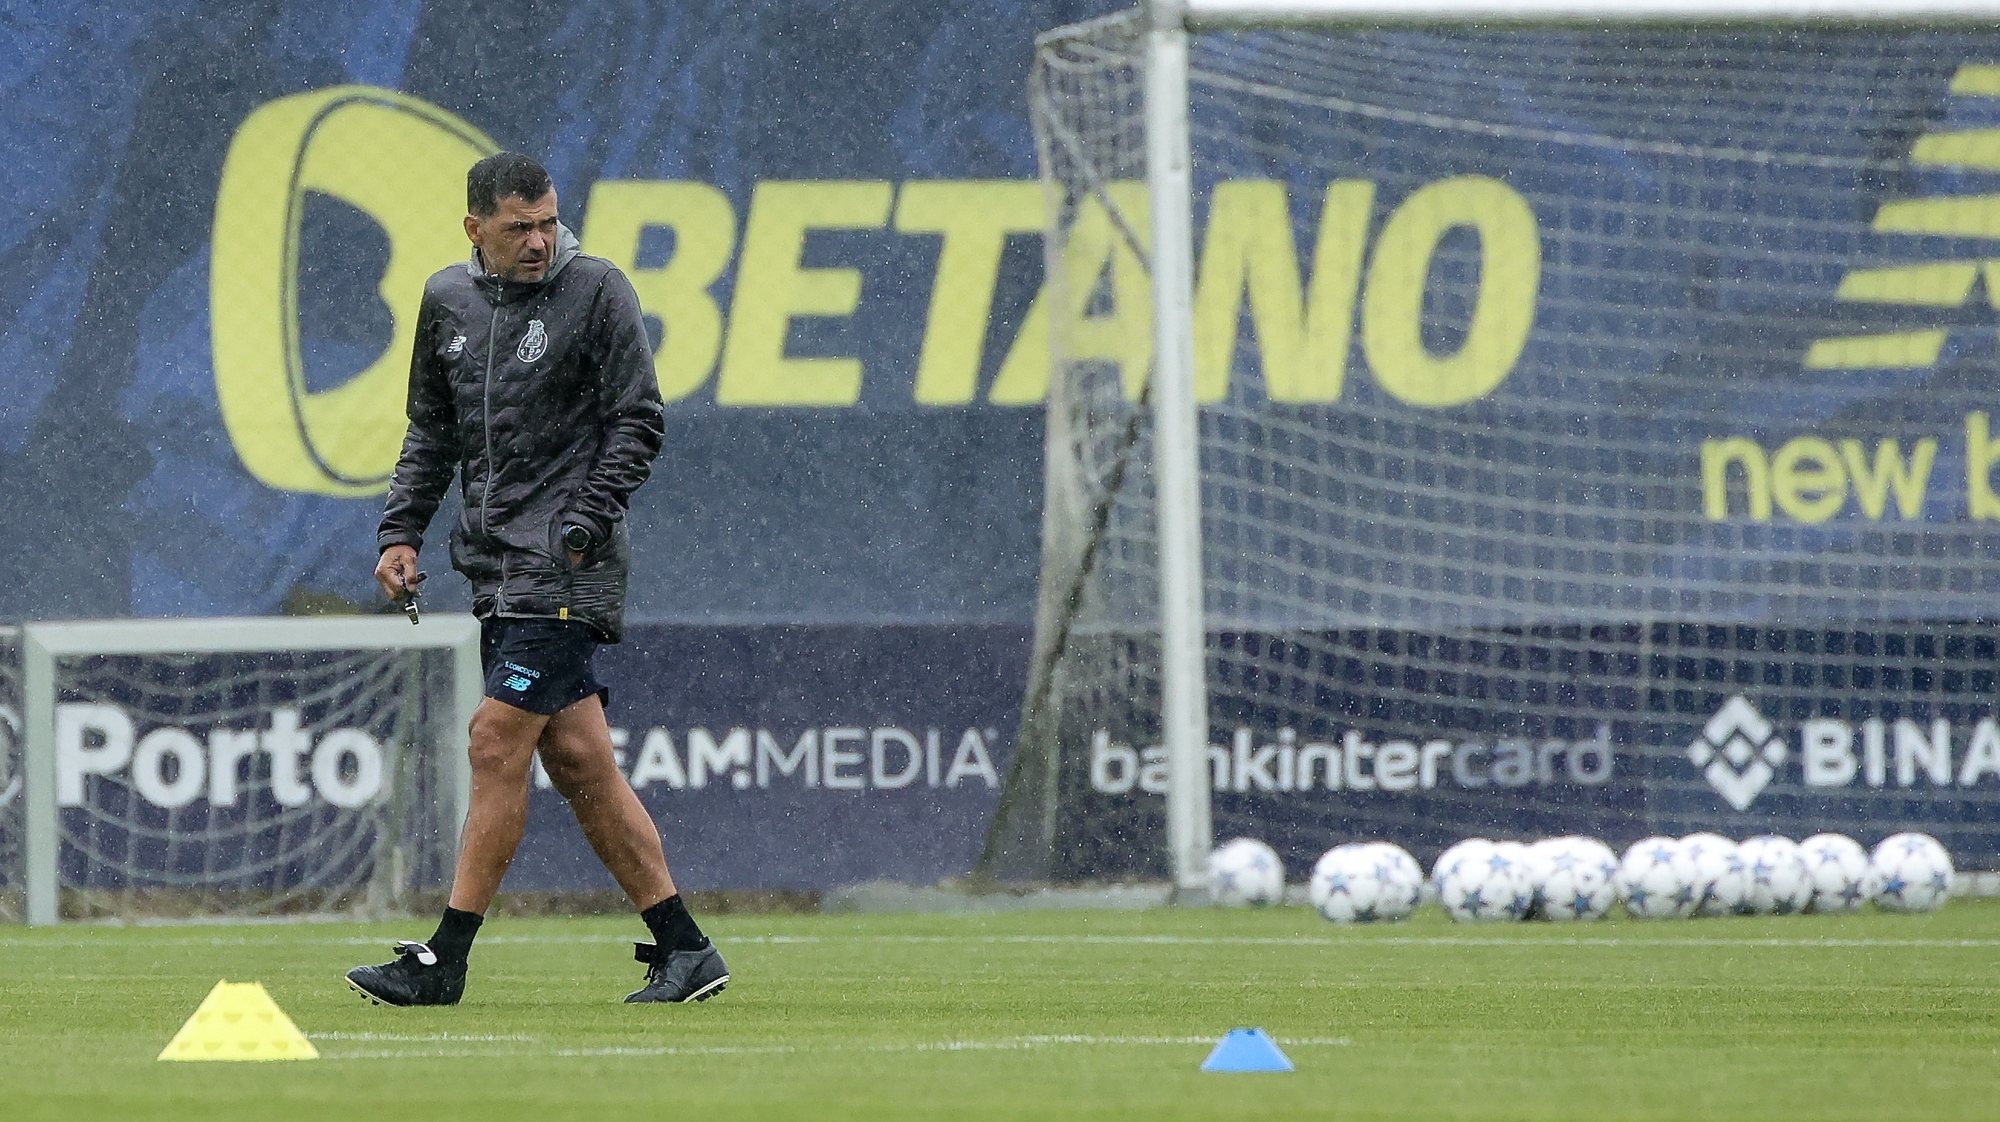 Antuérpia perde jogo e médio antes de defrontar FC Porto na Champions